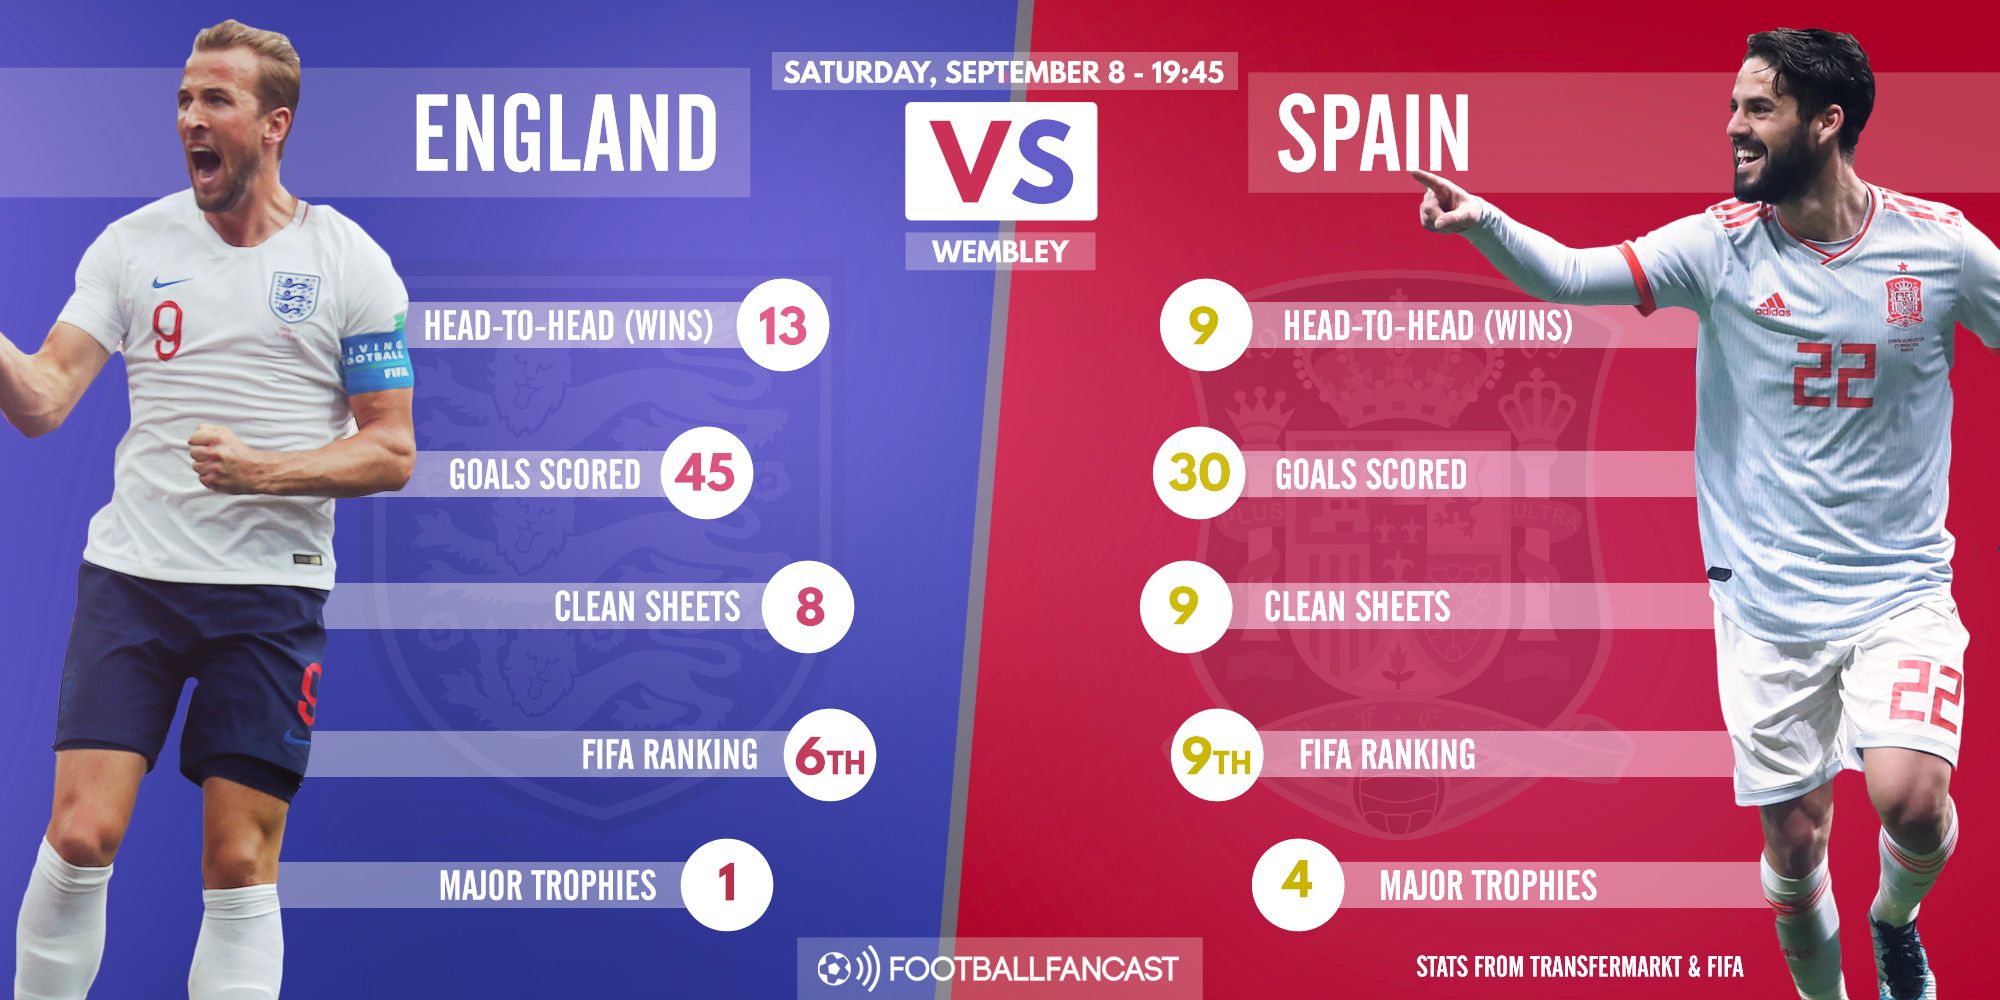 England vs Spain - Head to Head record